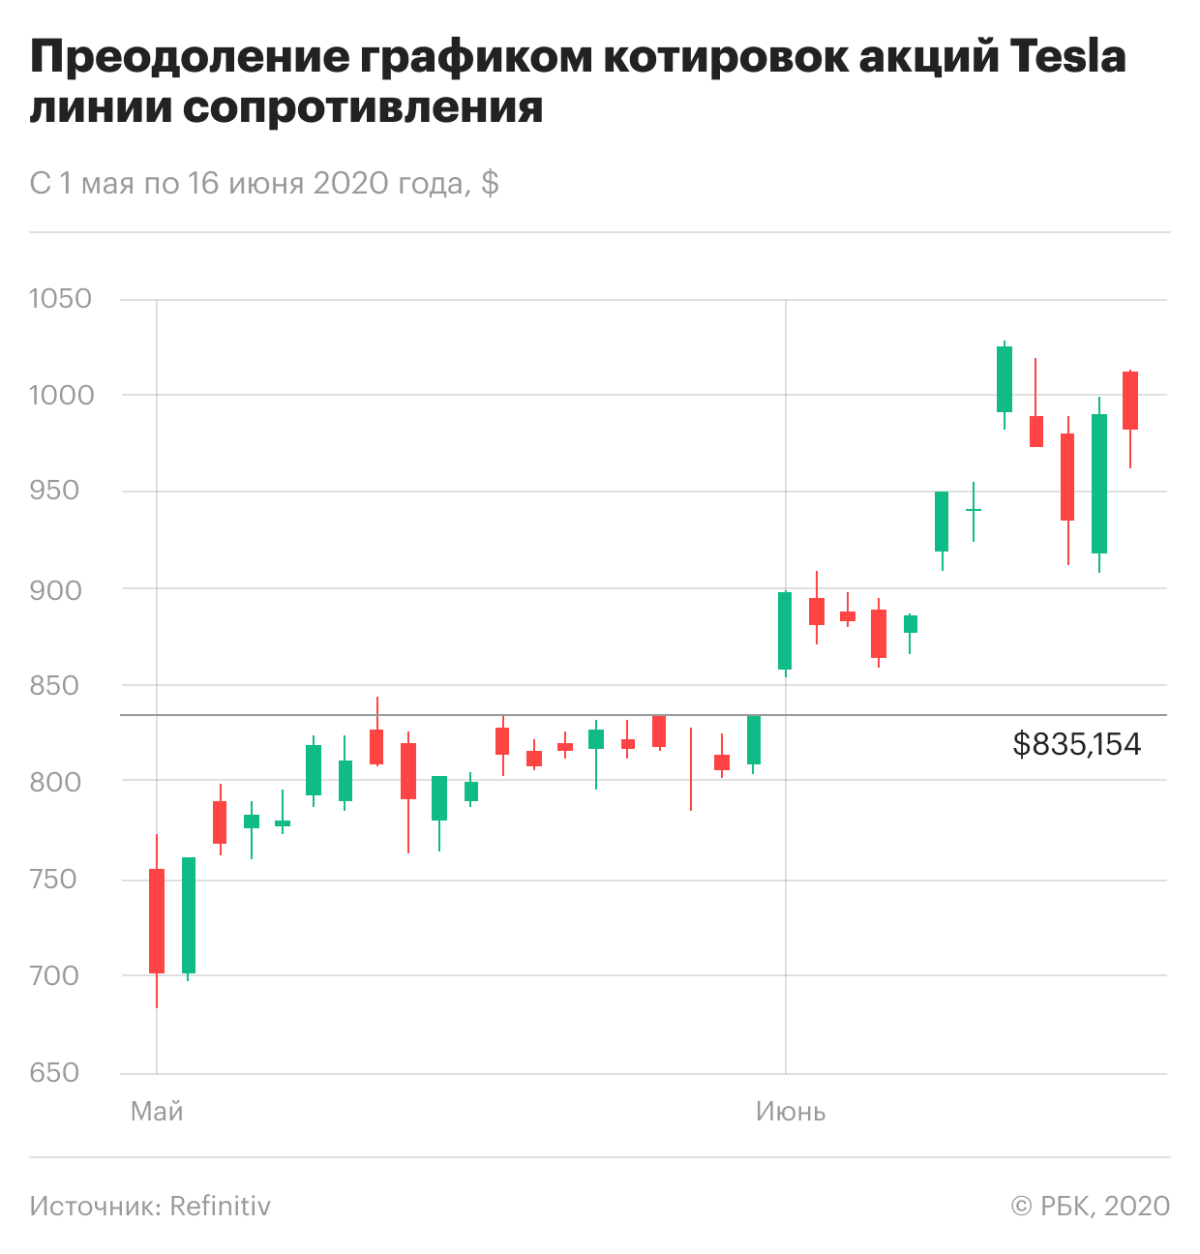 Преодоление котировками акций Tesla линии сопротивления